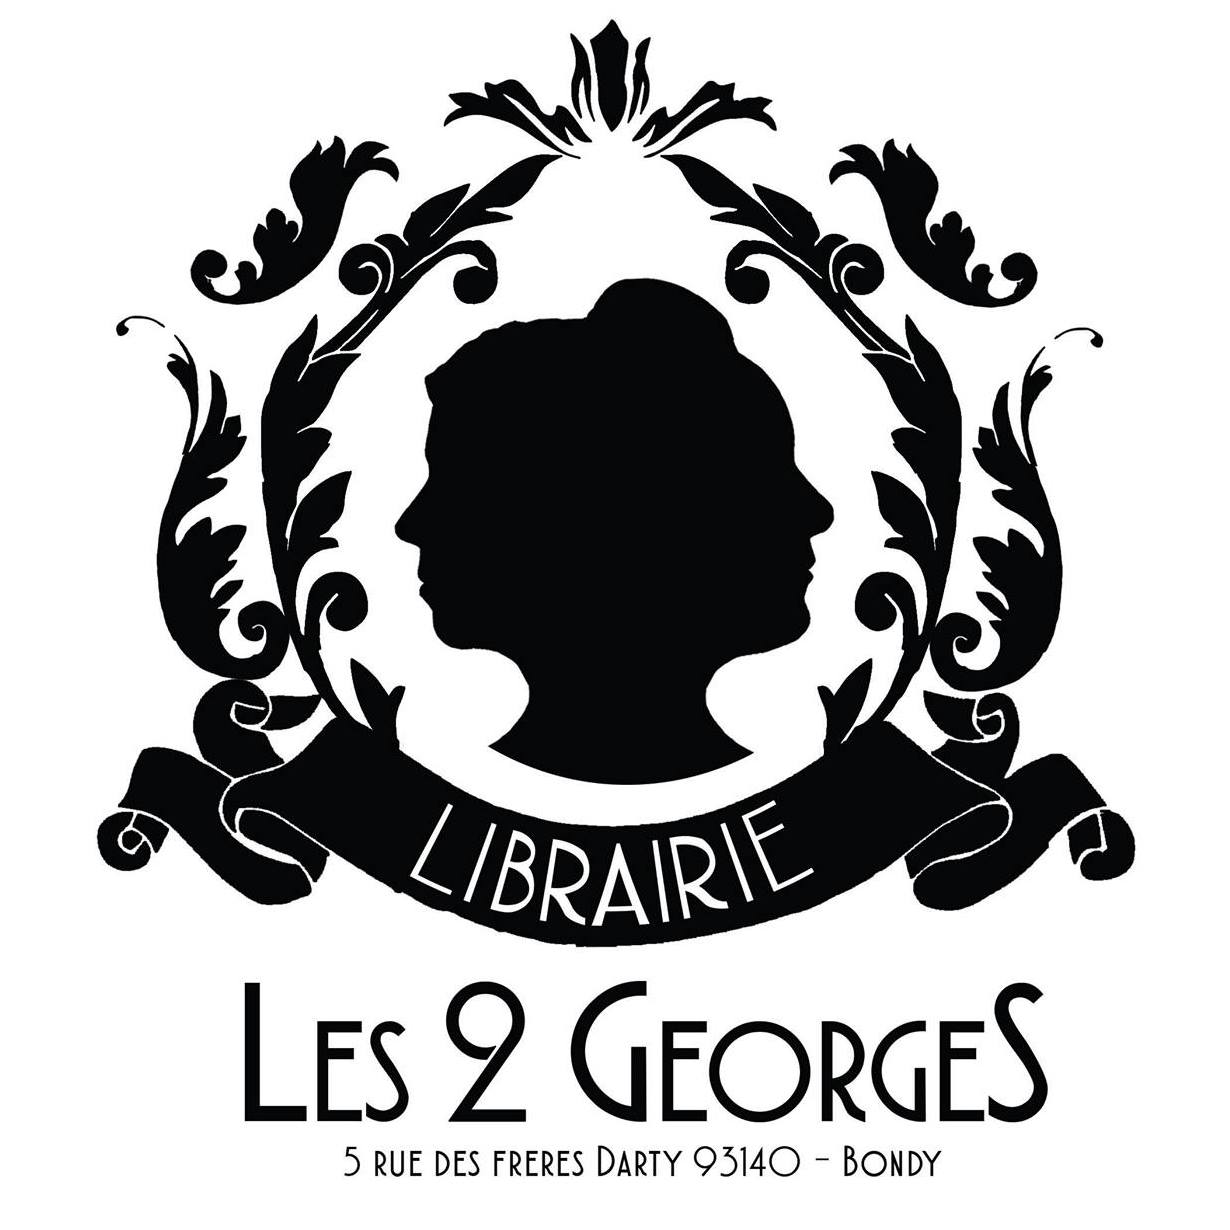 Le logo de la librairie Les 2 GeorgeS